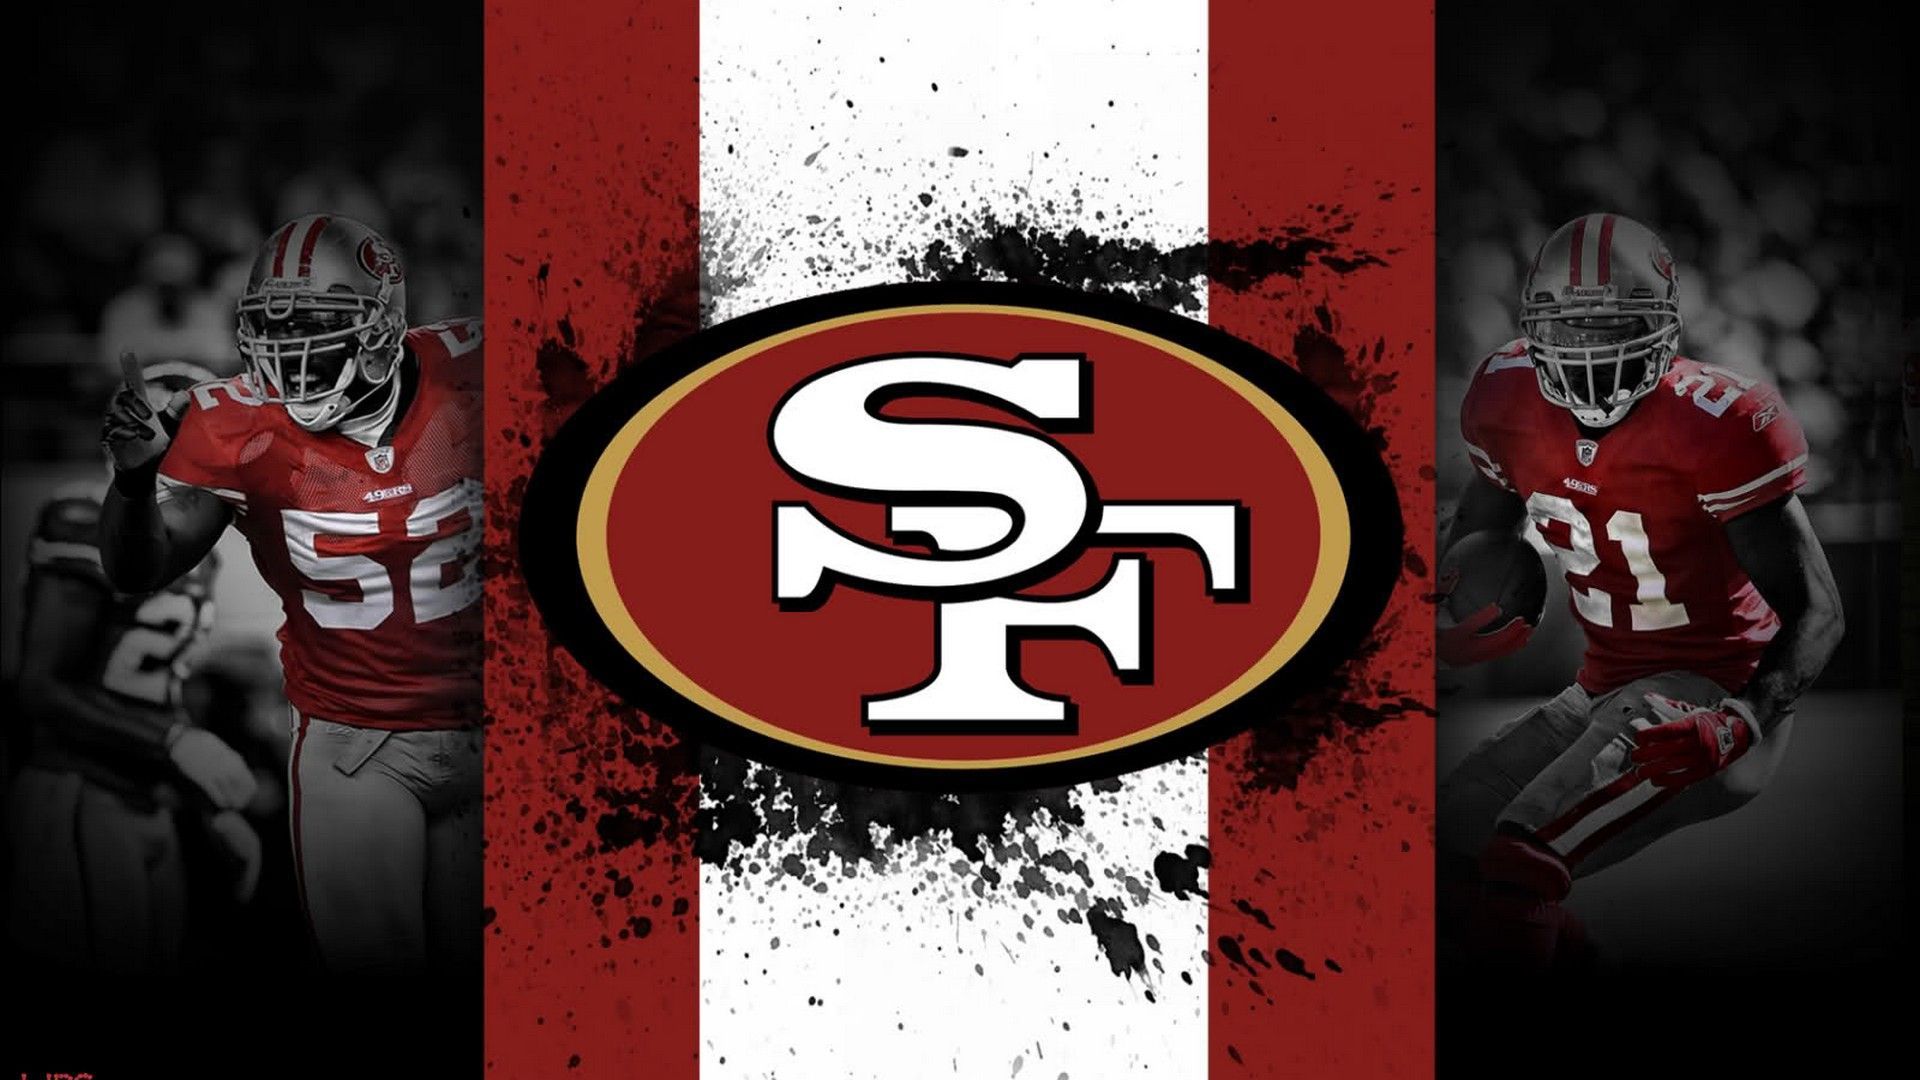 San Francisco 49ers Wallpaper NFL Football Wallpaper. Nfl football wallpaper, Football wallpaper, San francisco 49ers